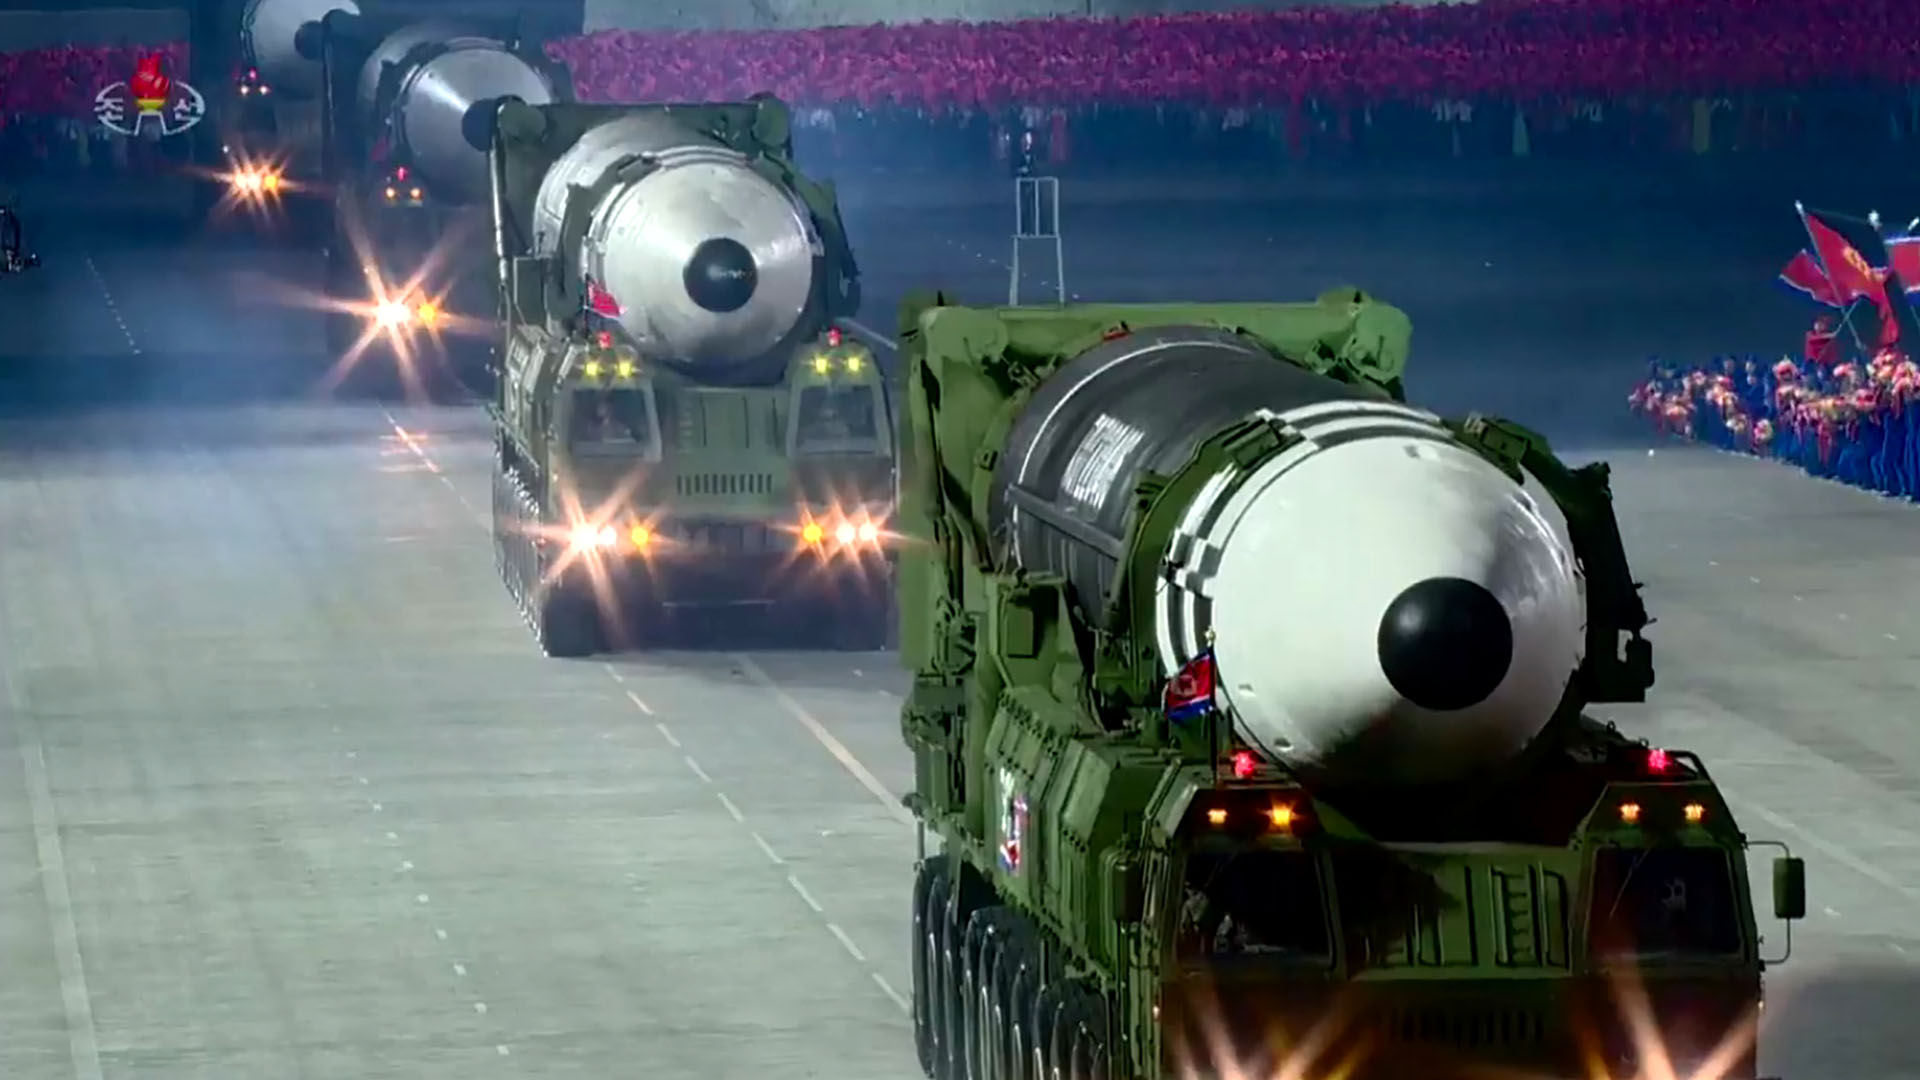 Misiles balísticos intercontinentales en un desfile militar en Pyongyang en octubre de 2020 (KCNA)